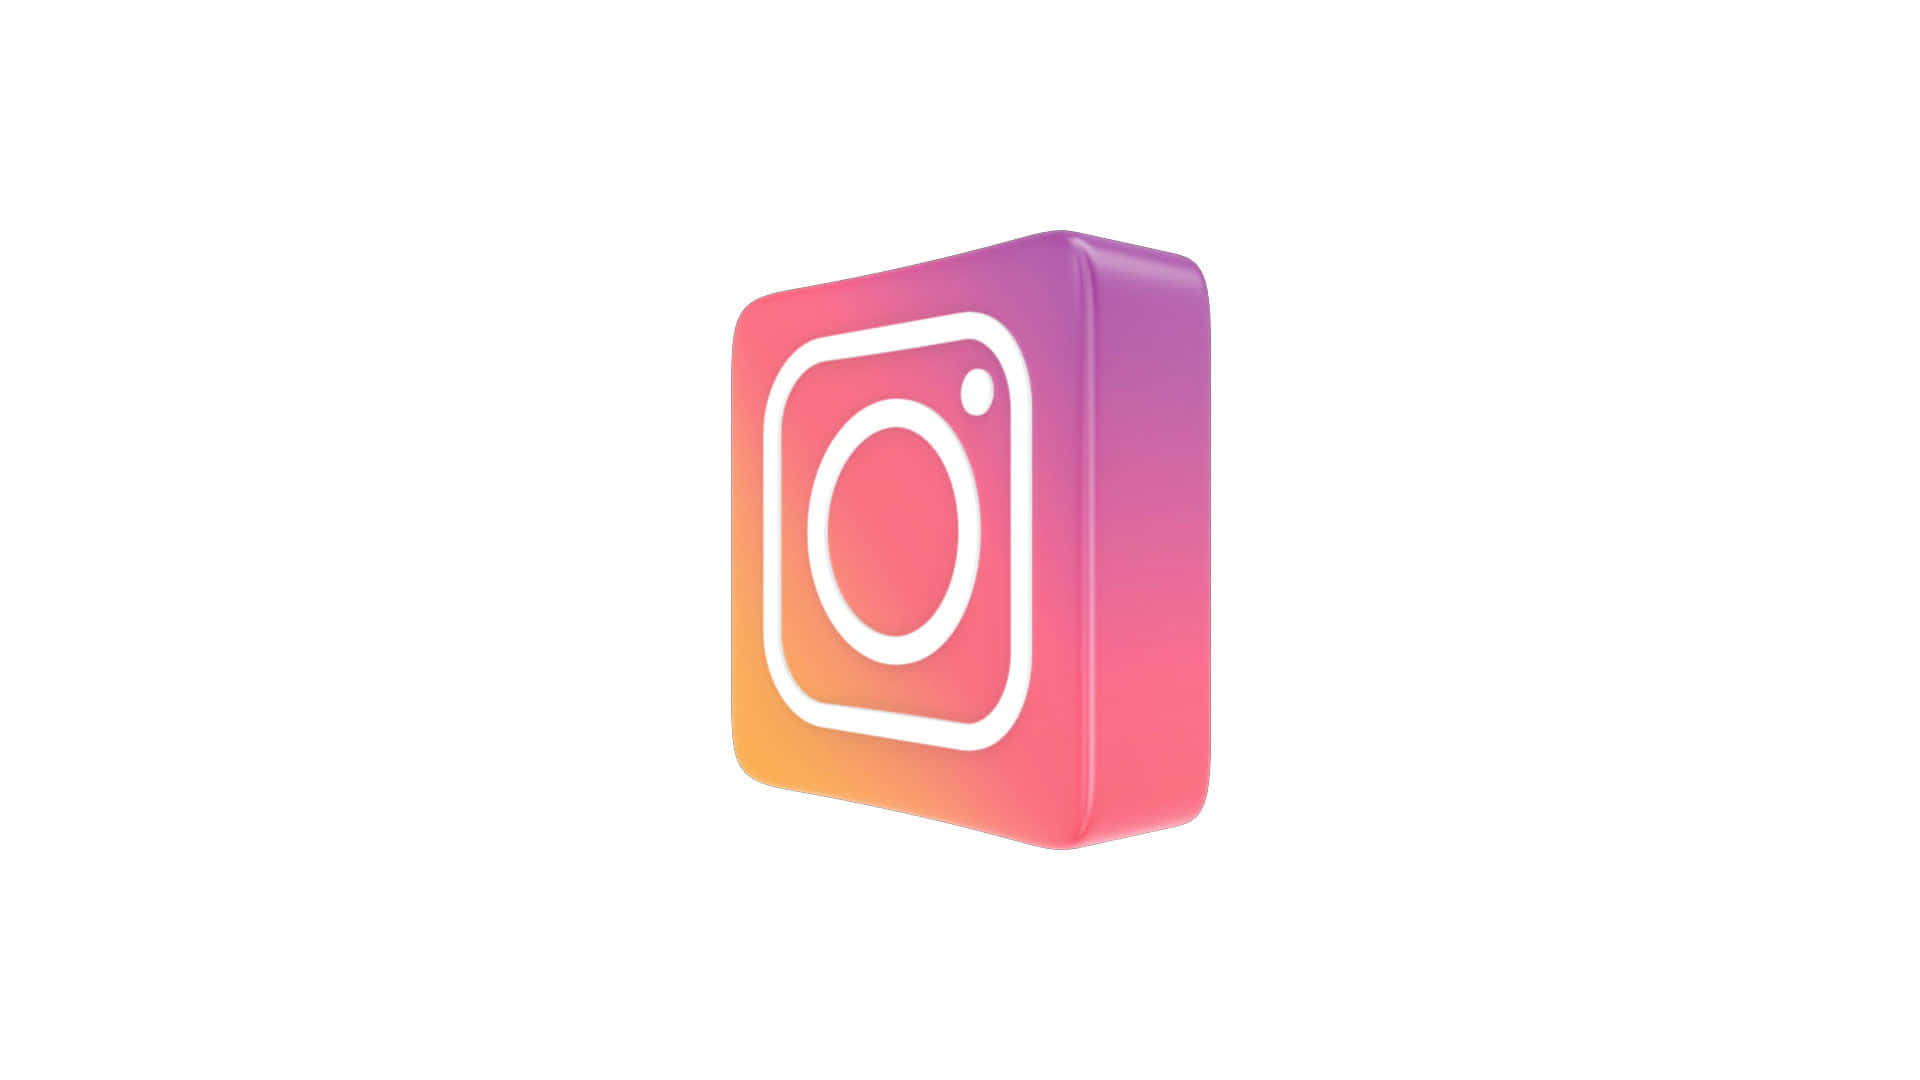 Sfondosociale 3d Con Logo Di Instagram, Formato 1920x1080.